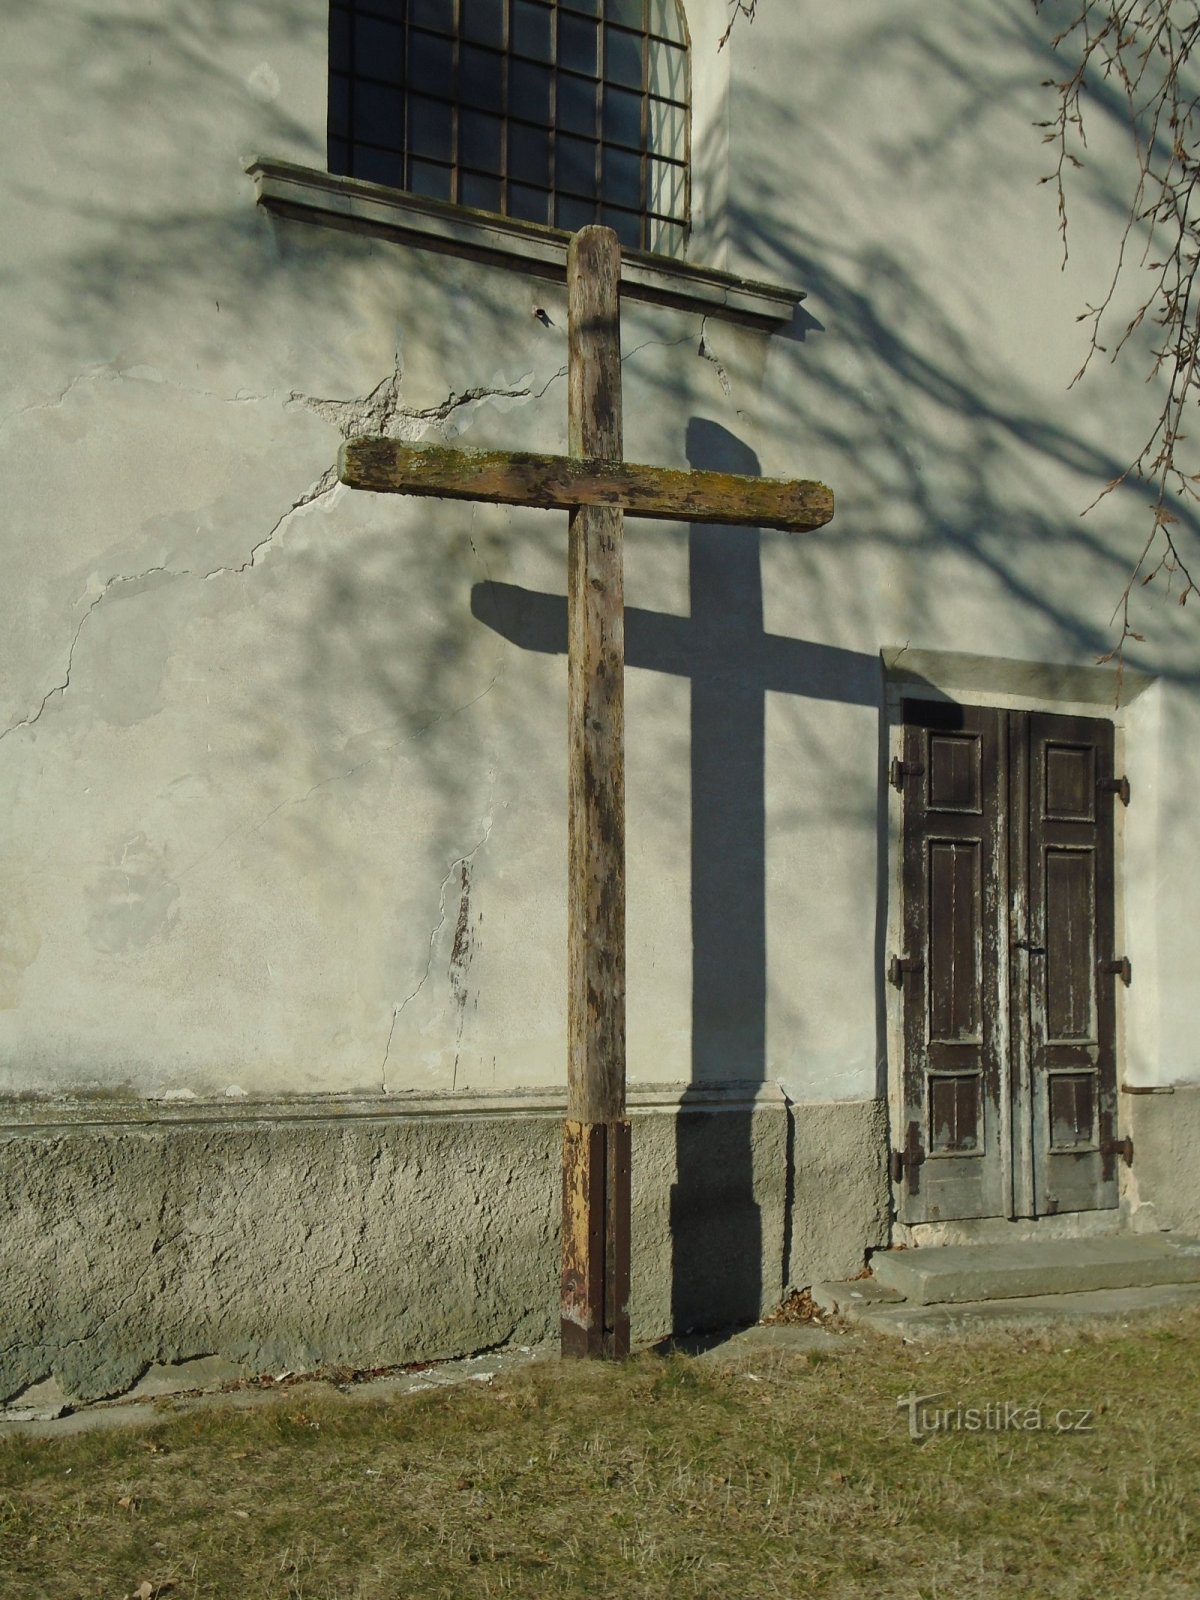 Korsa vid kyrkan (Číbuz)